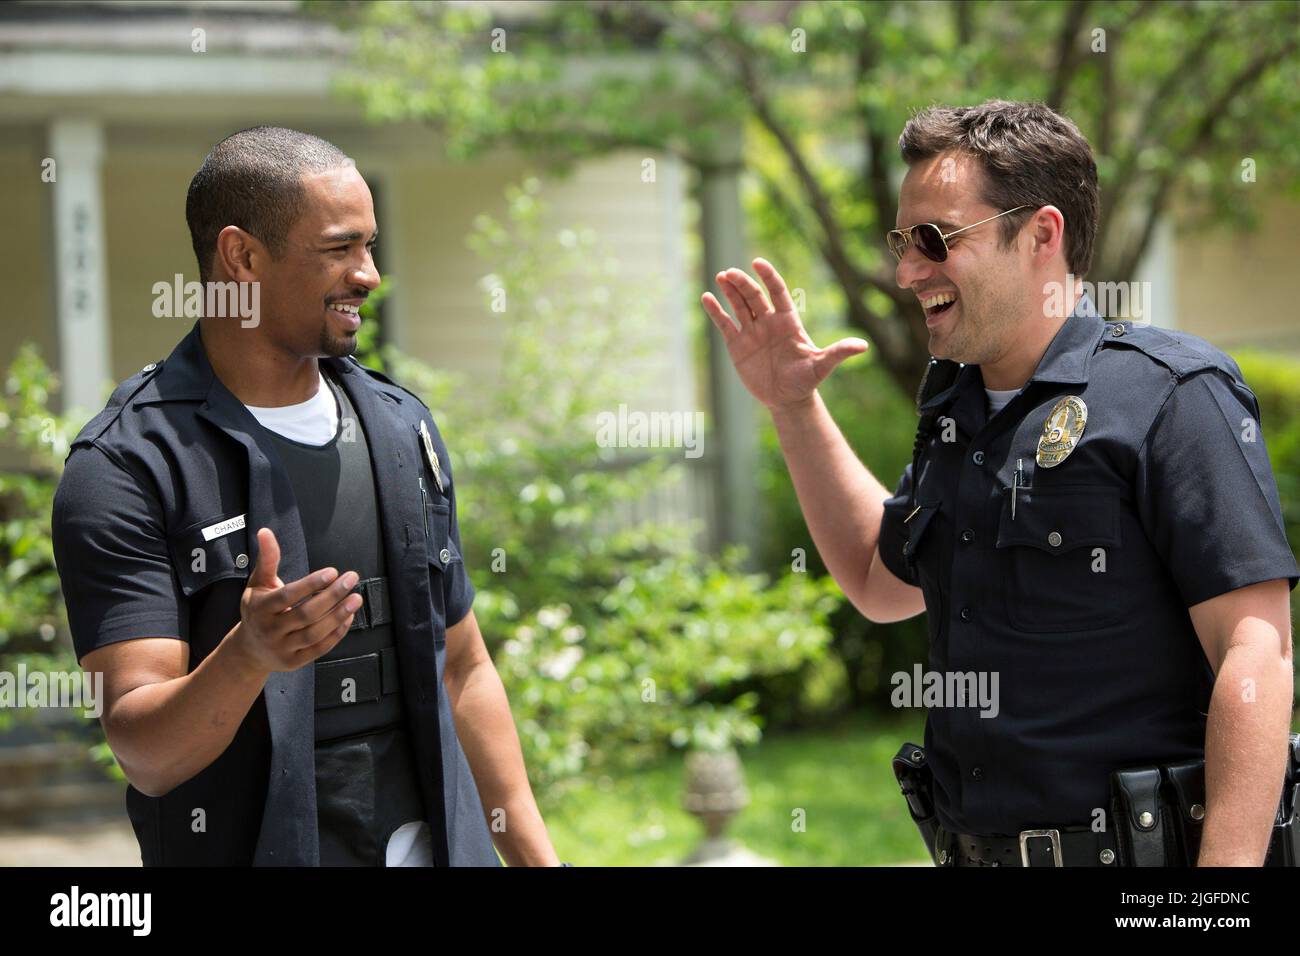 JR.,JOHNSON, LET'S BE COPS, 2014 Stock Photo